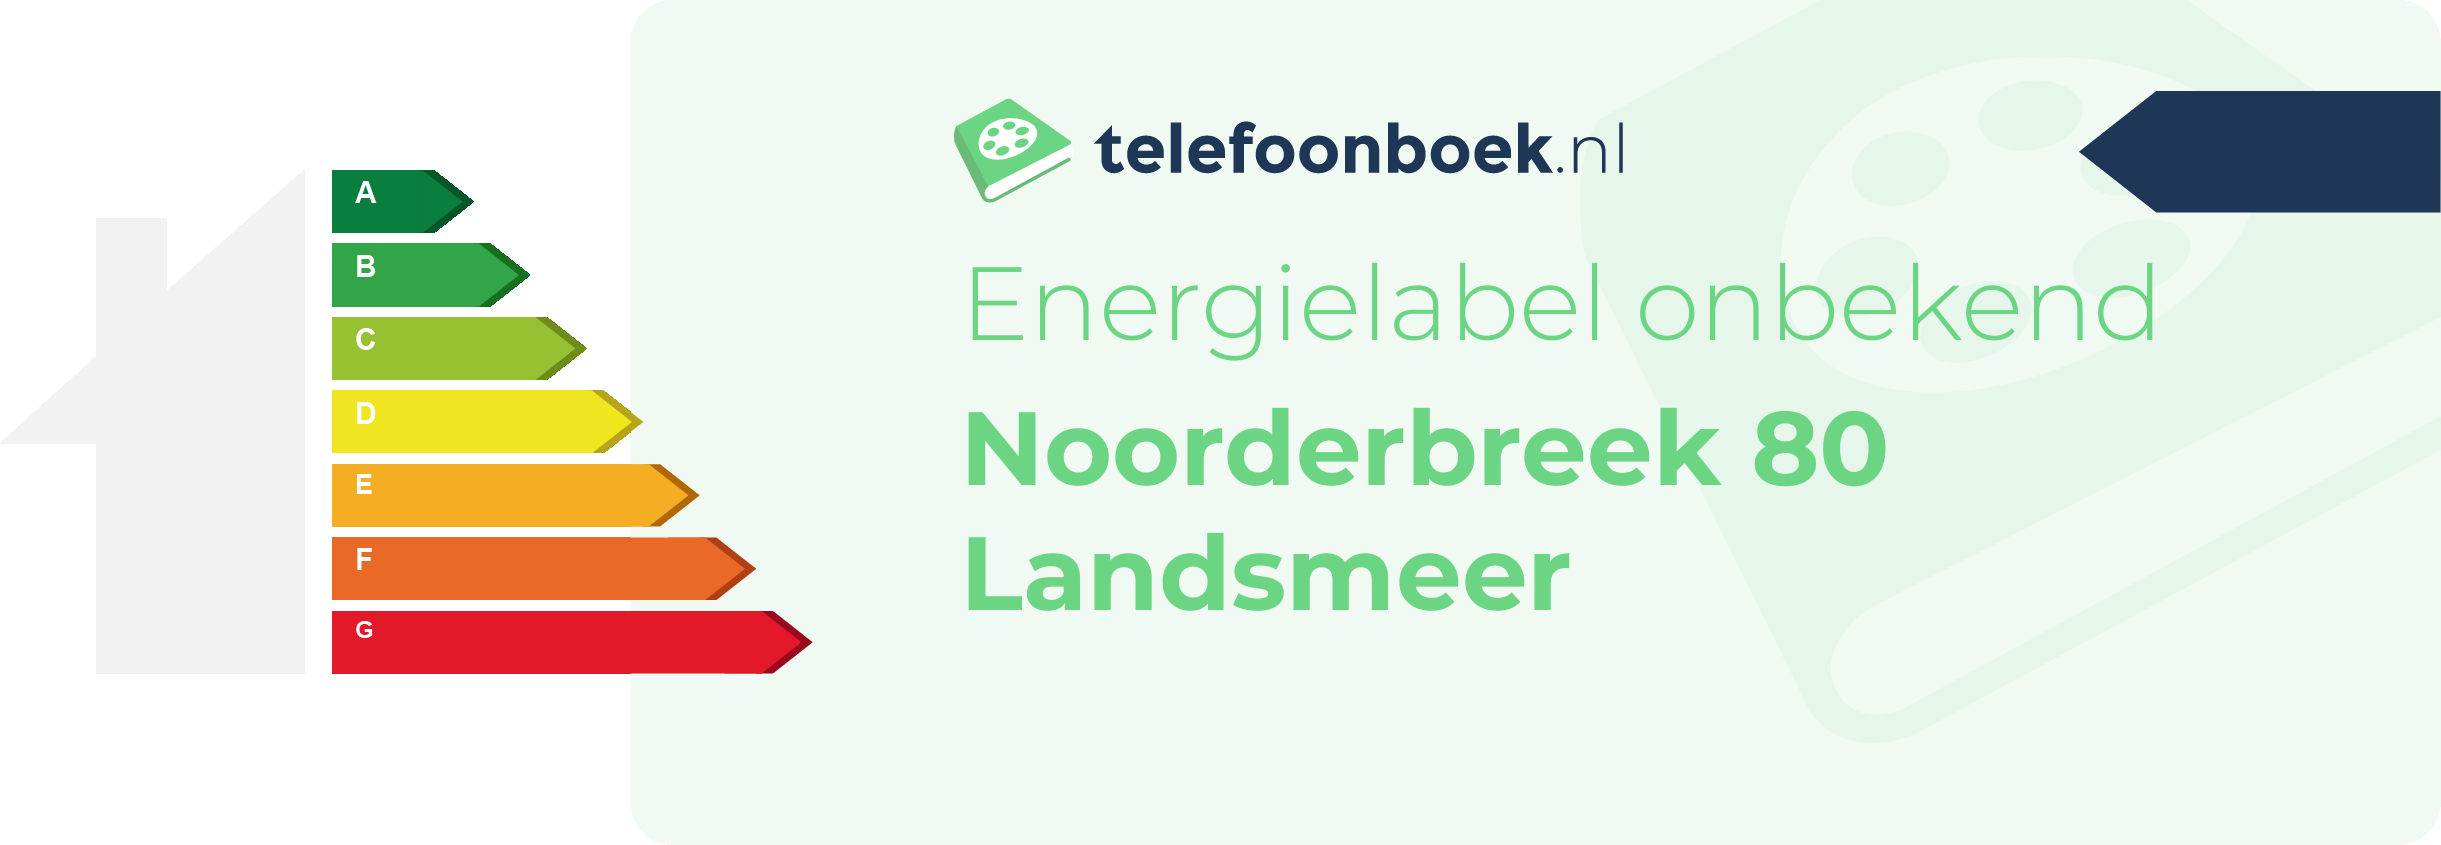 Energielabel Noorderbreek 80 Landsmeer